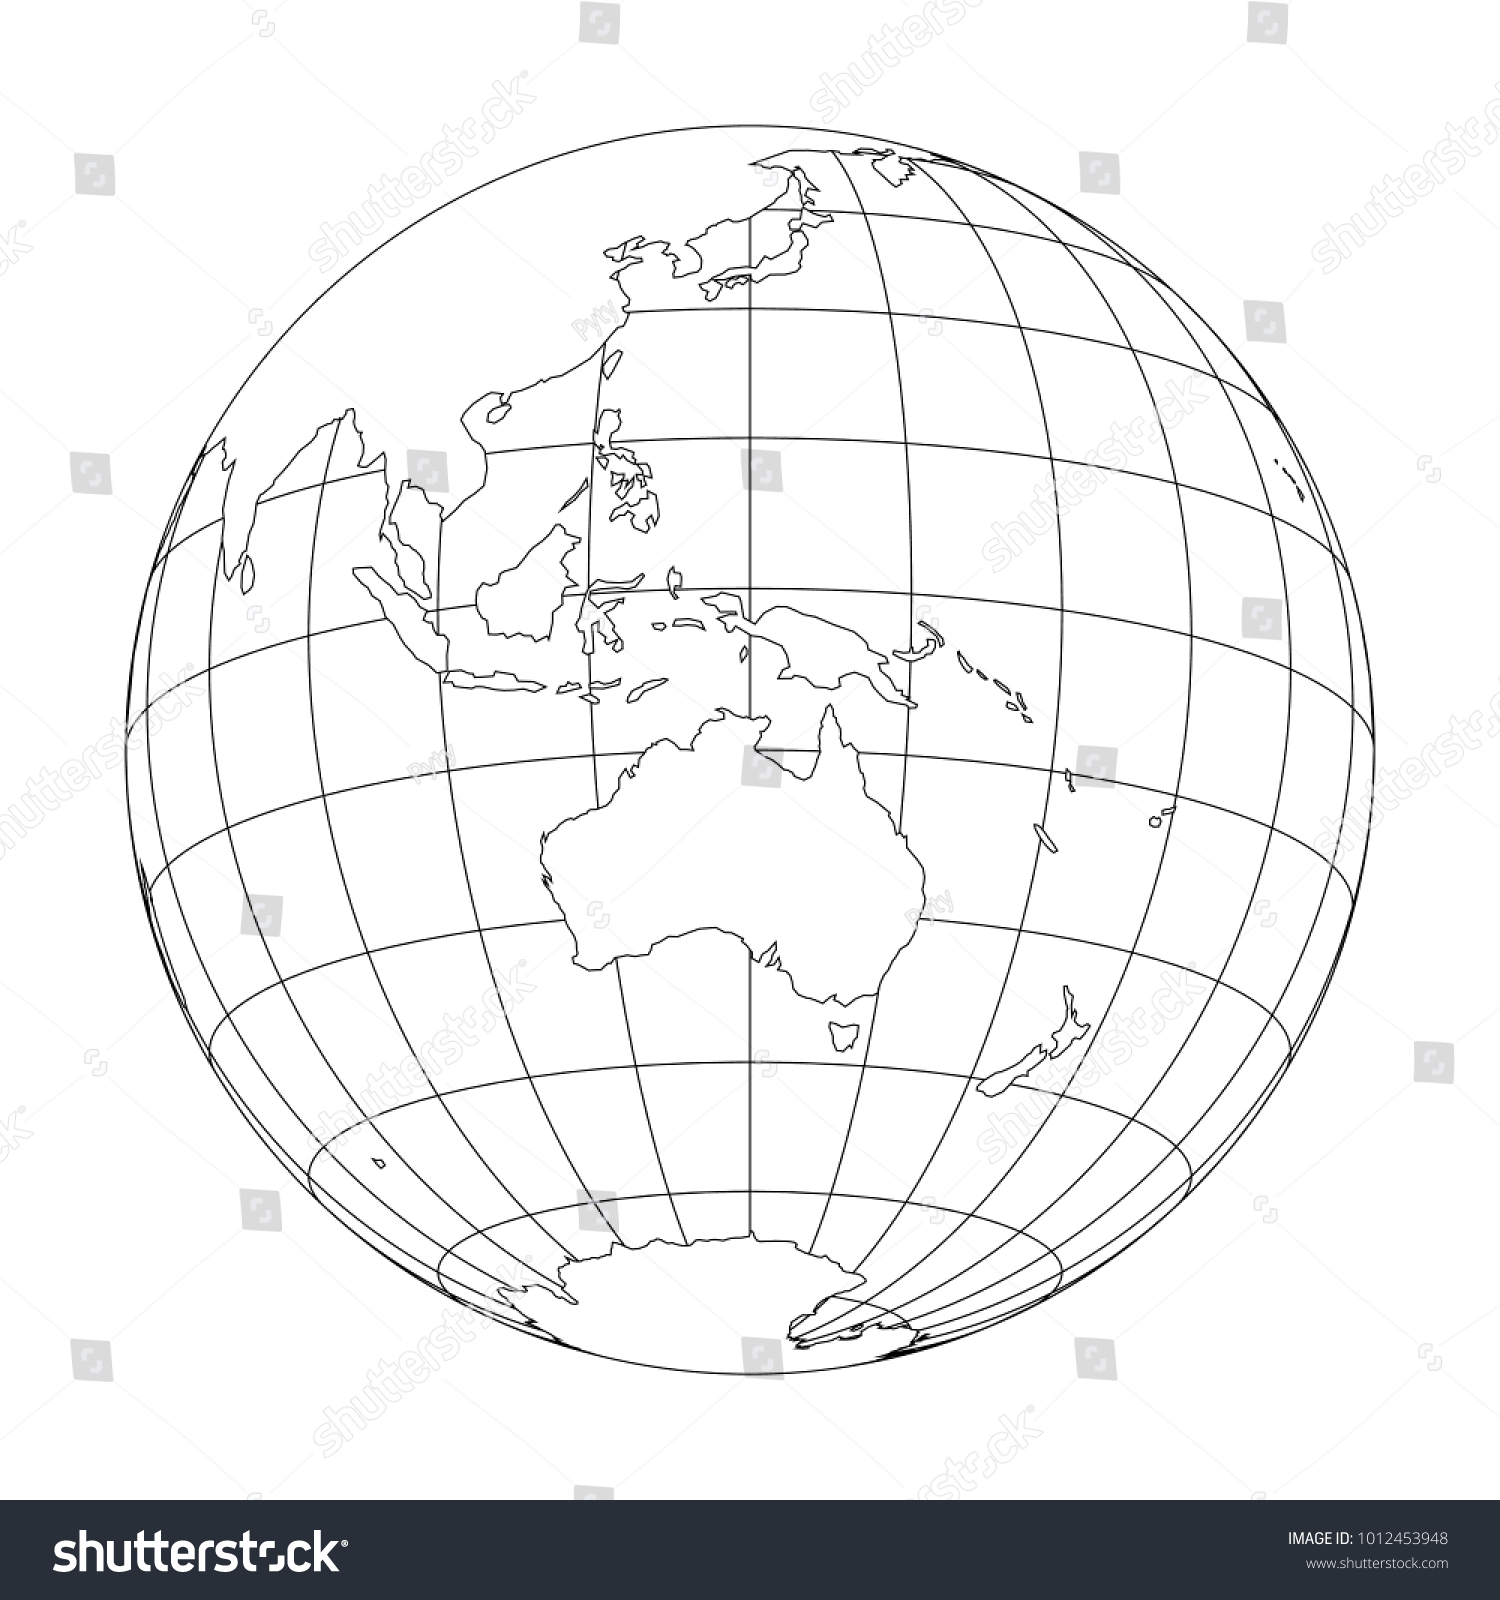 Image Vectorielle De Stock De Le Globe Terrestre Avec Une